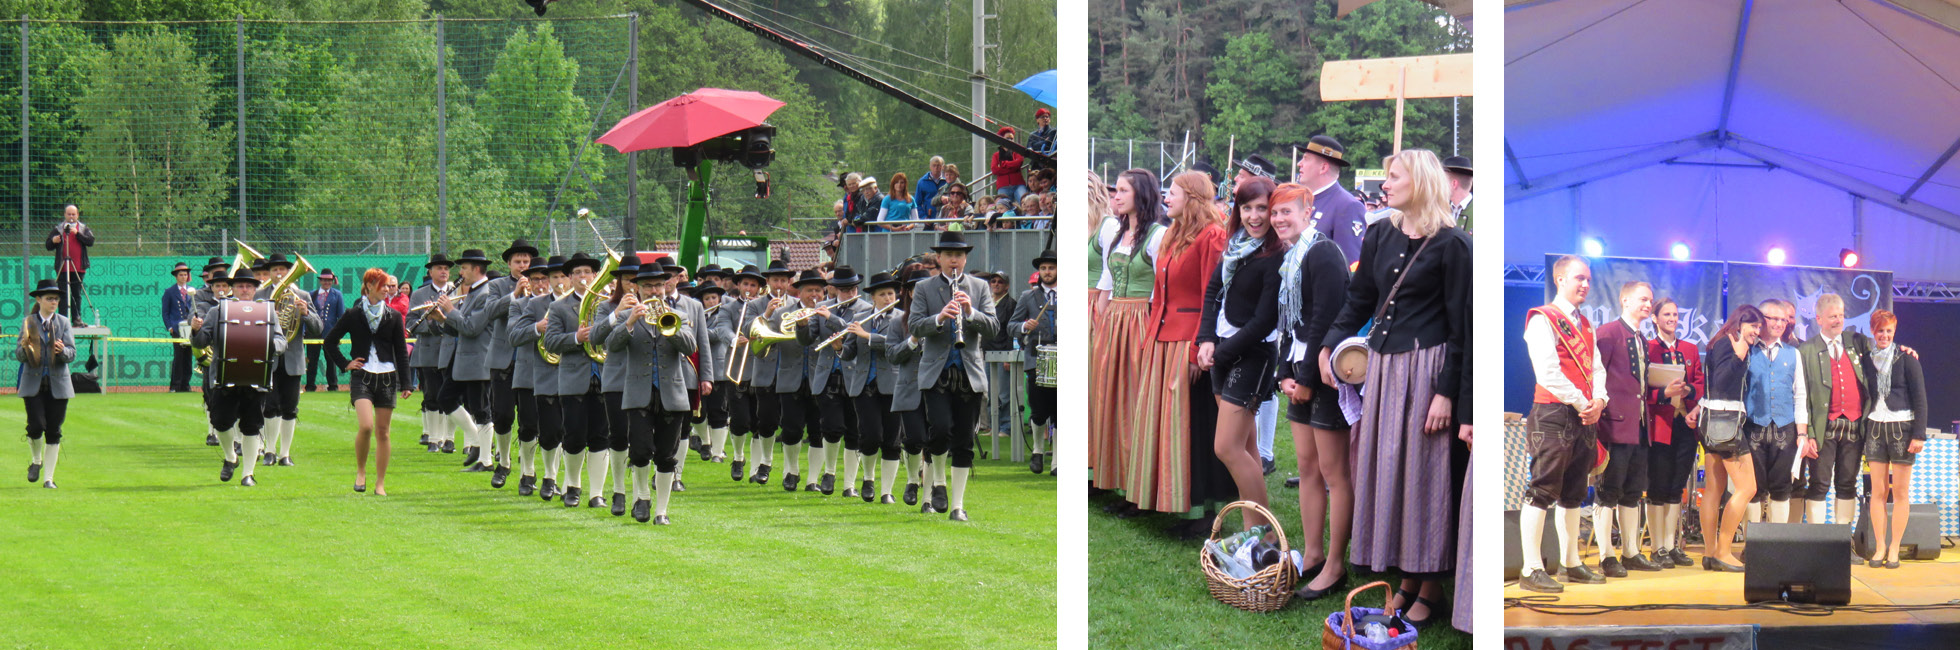 Marschwertung in Schönau Am 31. Mai 2014 stand für unseren Musikverein das alljährliche Bezirksmusikfest mit der Marschwertung in Schönau auf dem Programm.